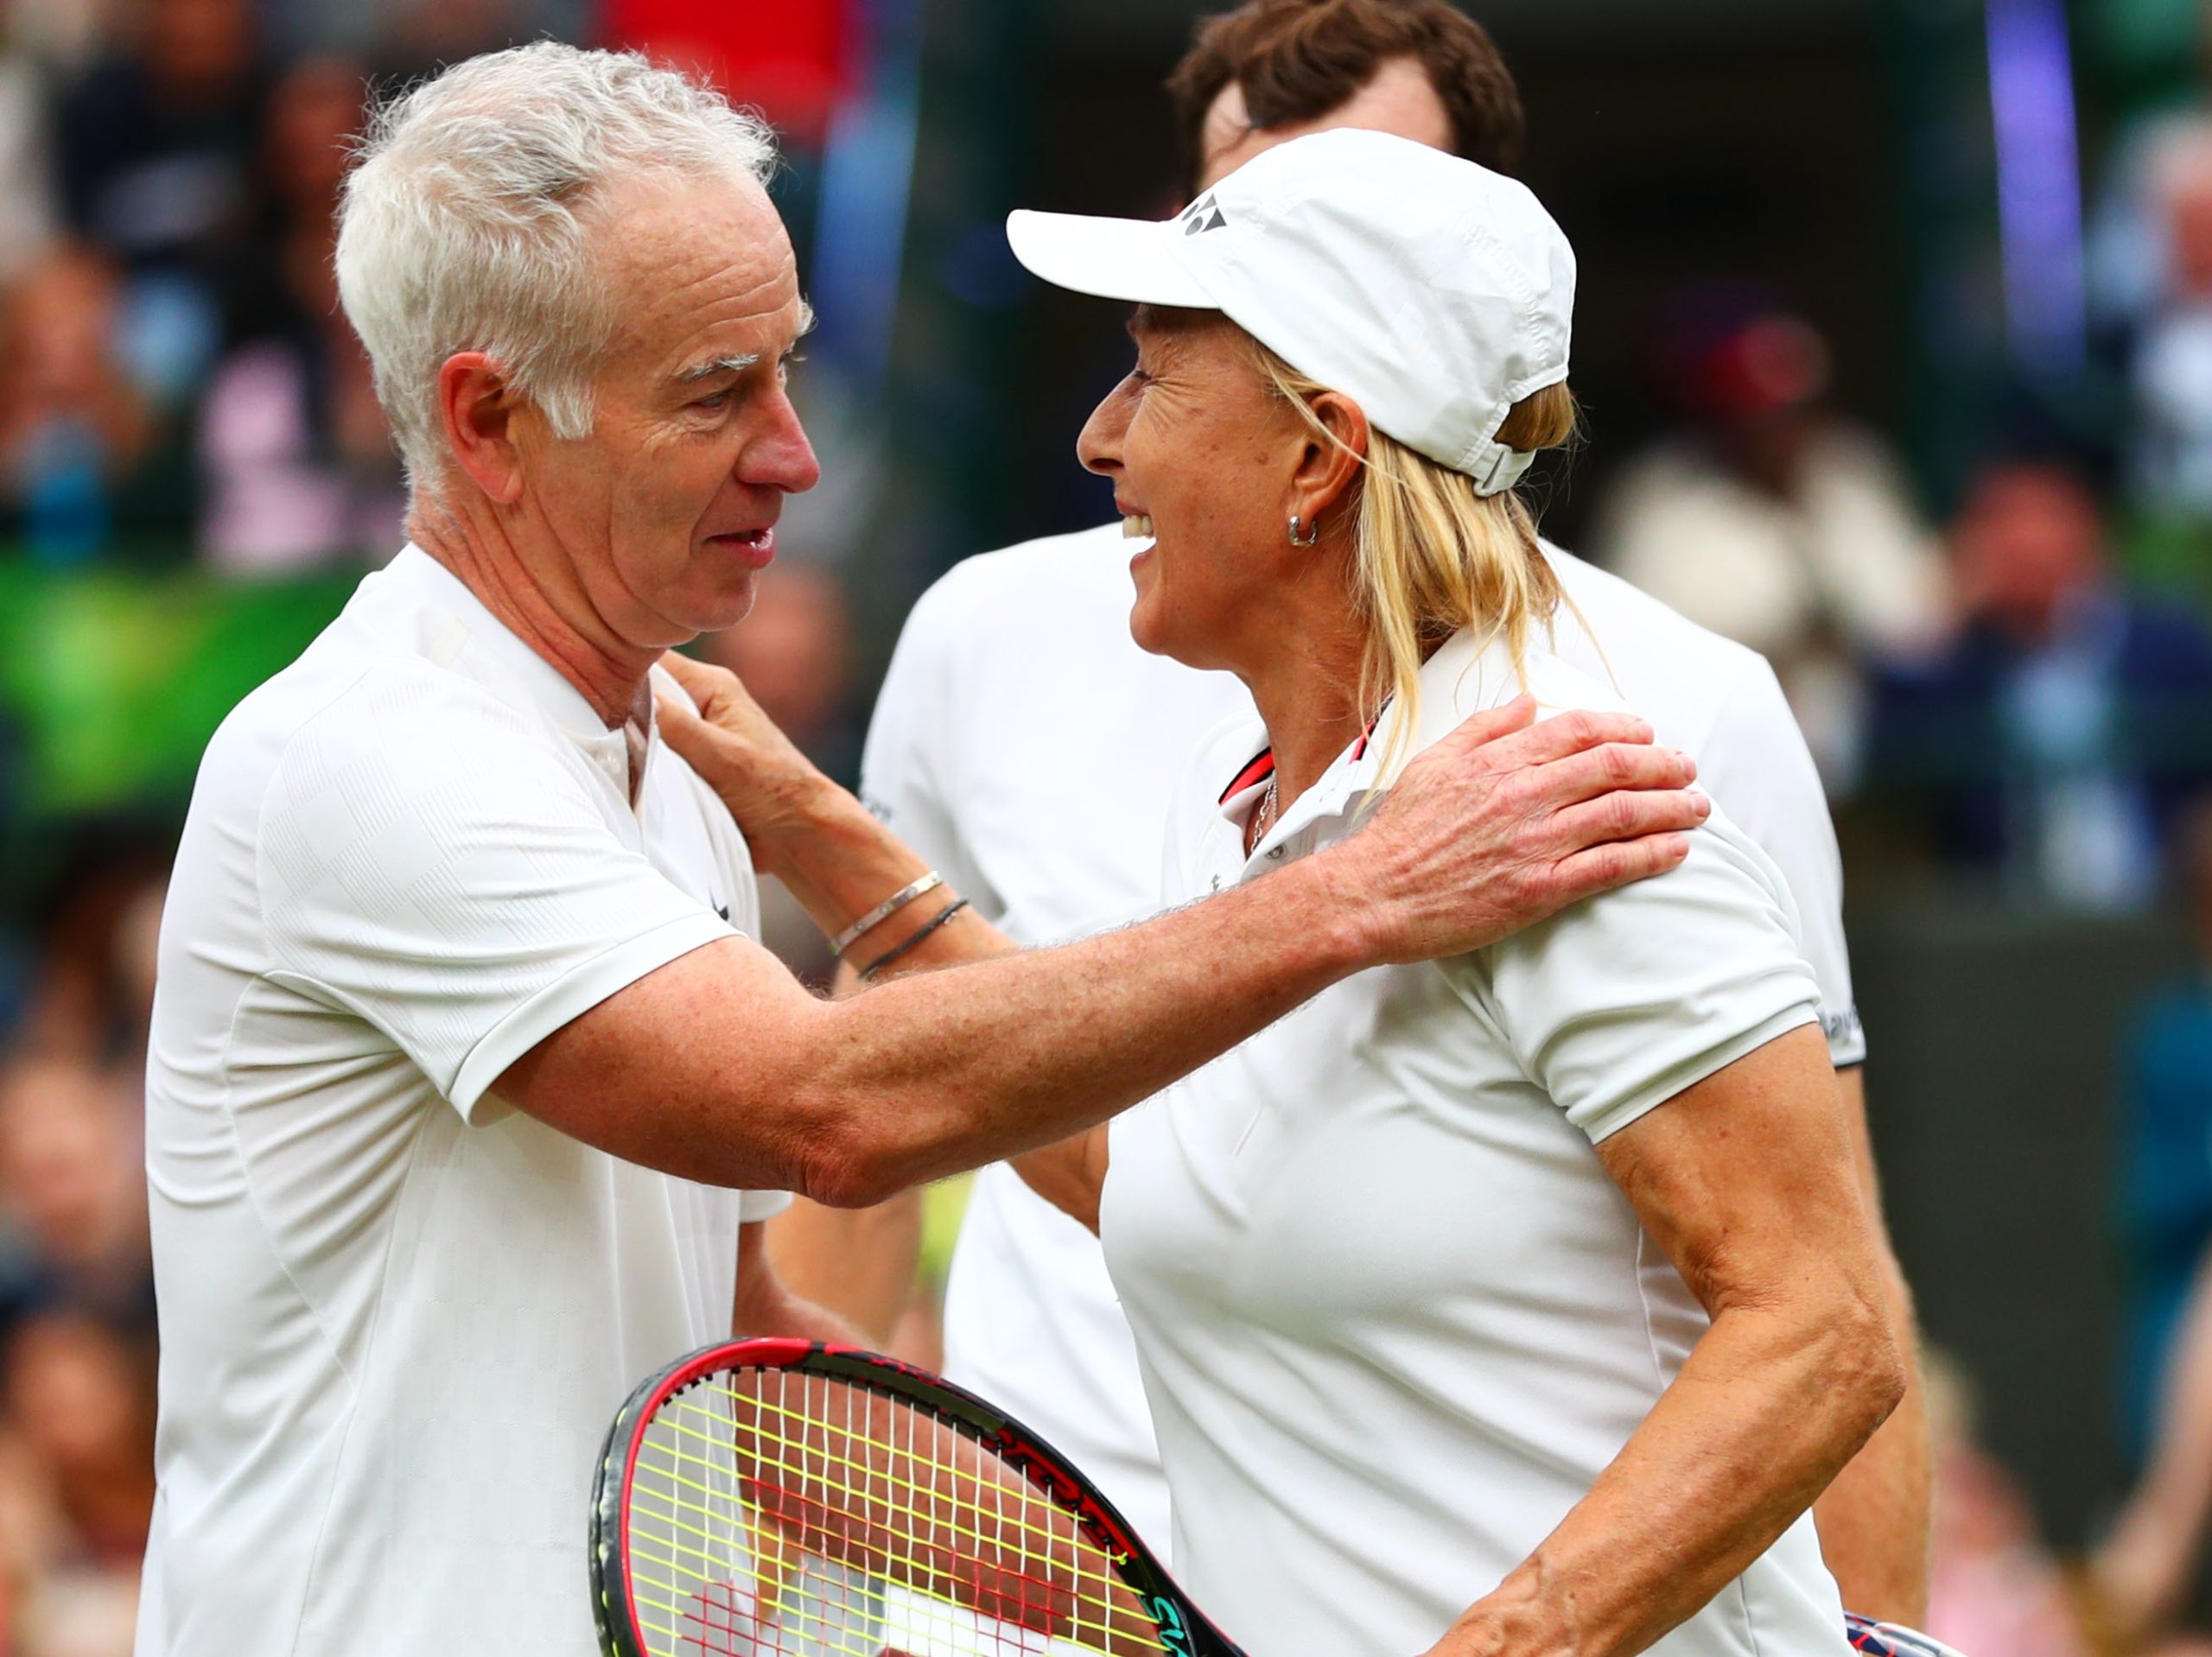 John McEnroe and Martina Navratilova issued an apology 